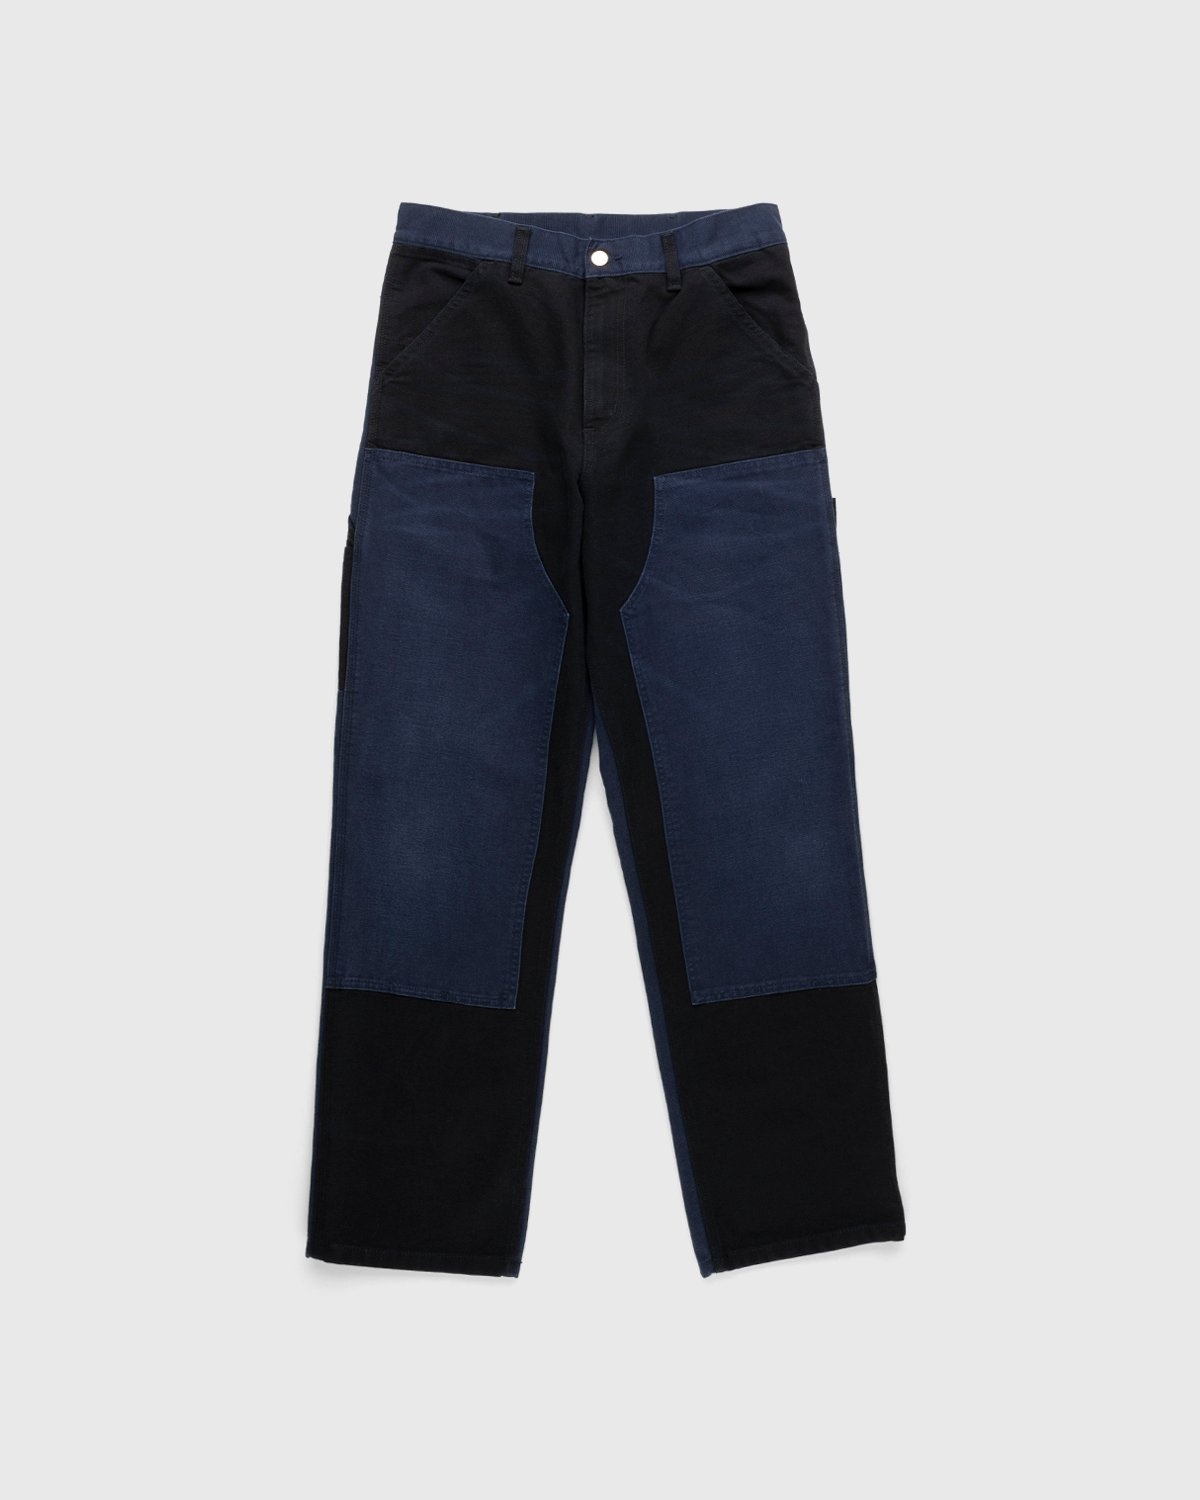 Carhartt WIP – Double Knee Pant Dark Navy - Pants - Blue - Image 1